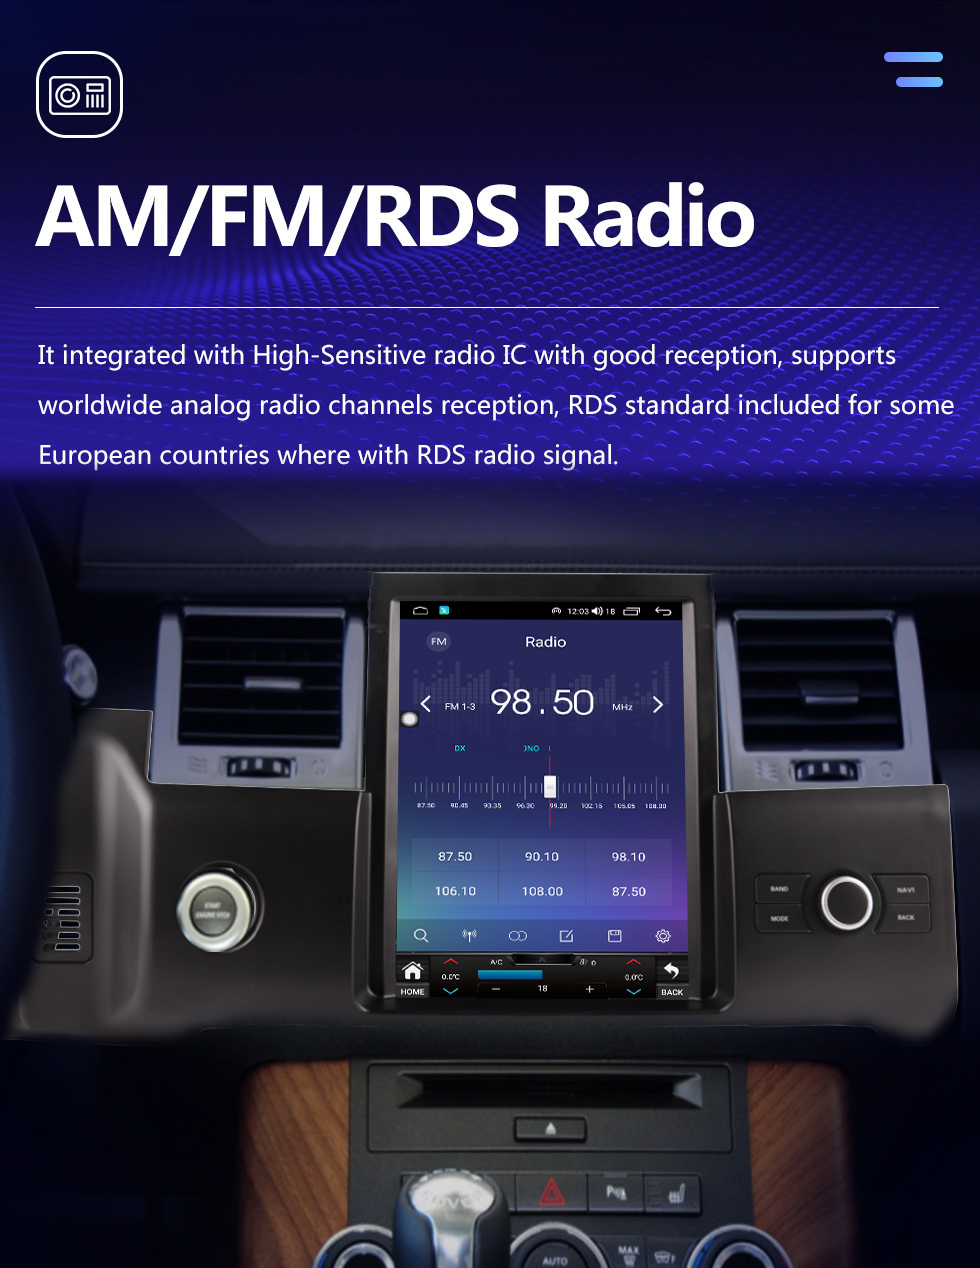 Seicane OEM Android 10.0 para 2010-2013 Land Rover Range Rover Sport Radio GPS Navigation System com 9,7 polegadas HD Touchscreen Bluetooth suporte Carplay AHD Camera